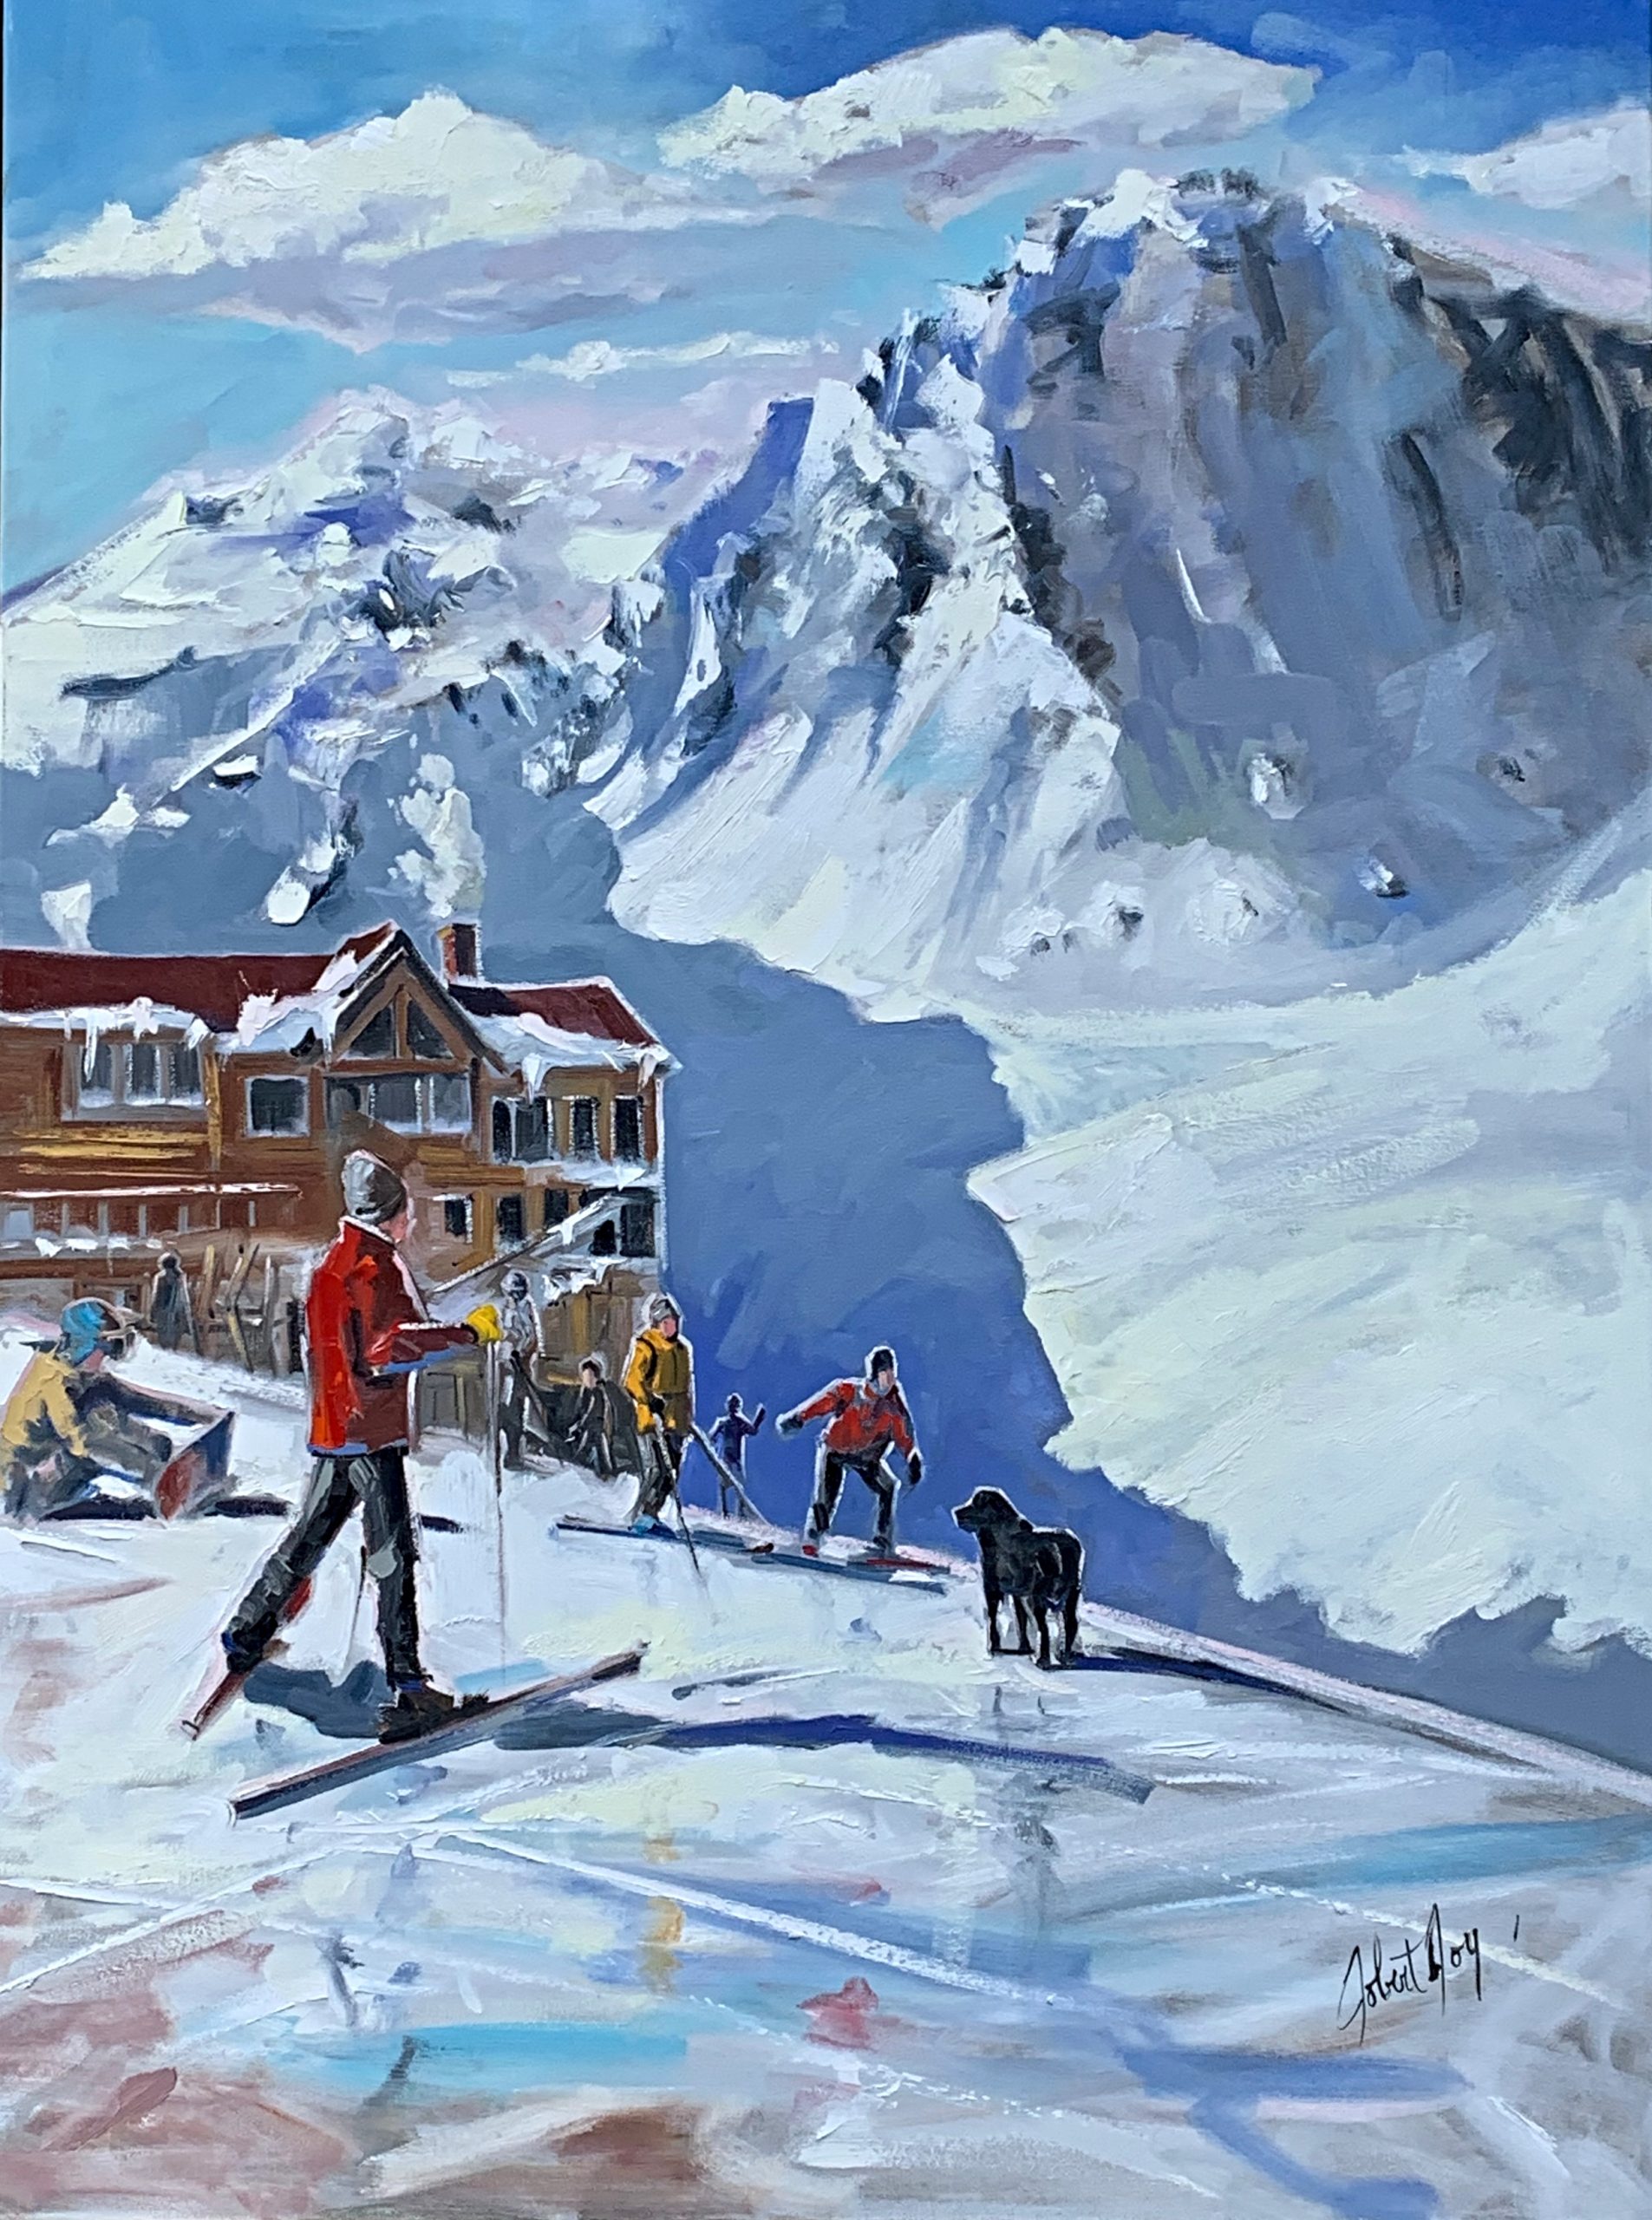 Apprécier le vent dans les montagnes, acrylic ski painting by Robert Roy | Effusion Art Gallery + Cast Glass Studio, Invermere BC